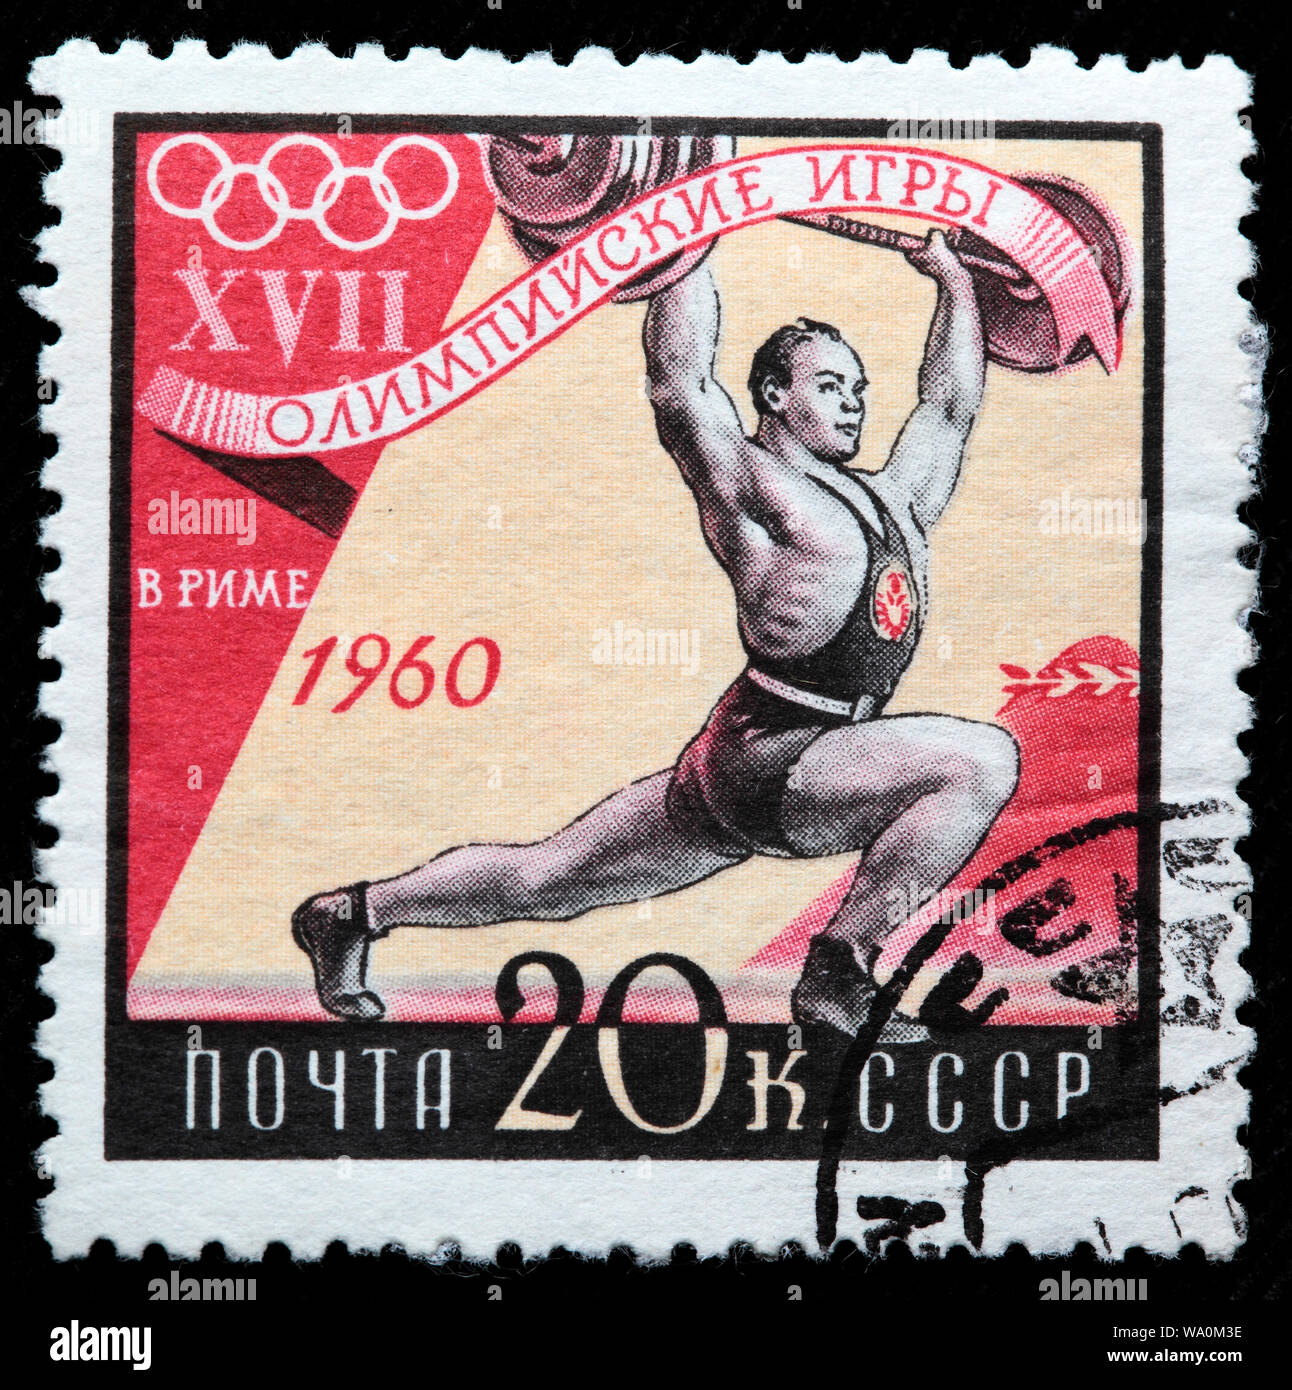 Jeux Olympiques d'été de 1960, l'haltérophilie, Rome, timbre-poste, Russie, URSS, 1960 Banque D'Images